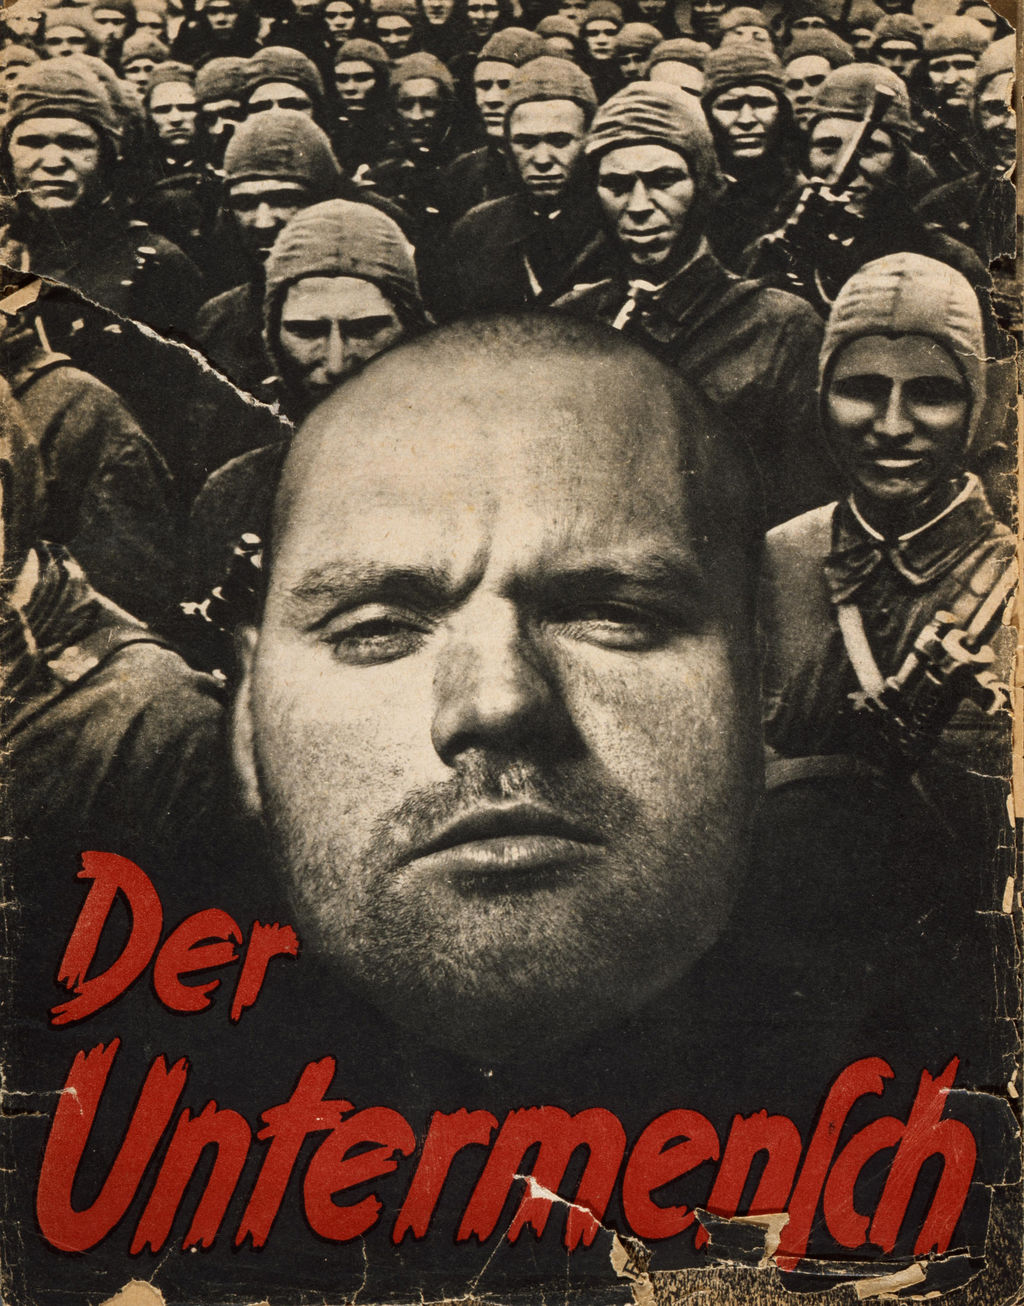 Exponat: Broschüre: "Der Untermensch", 1942